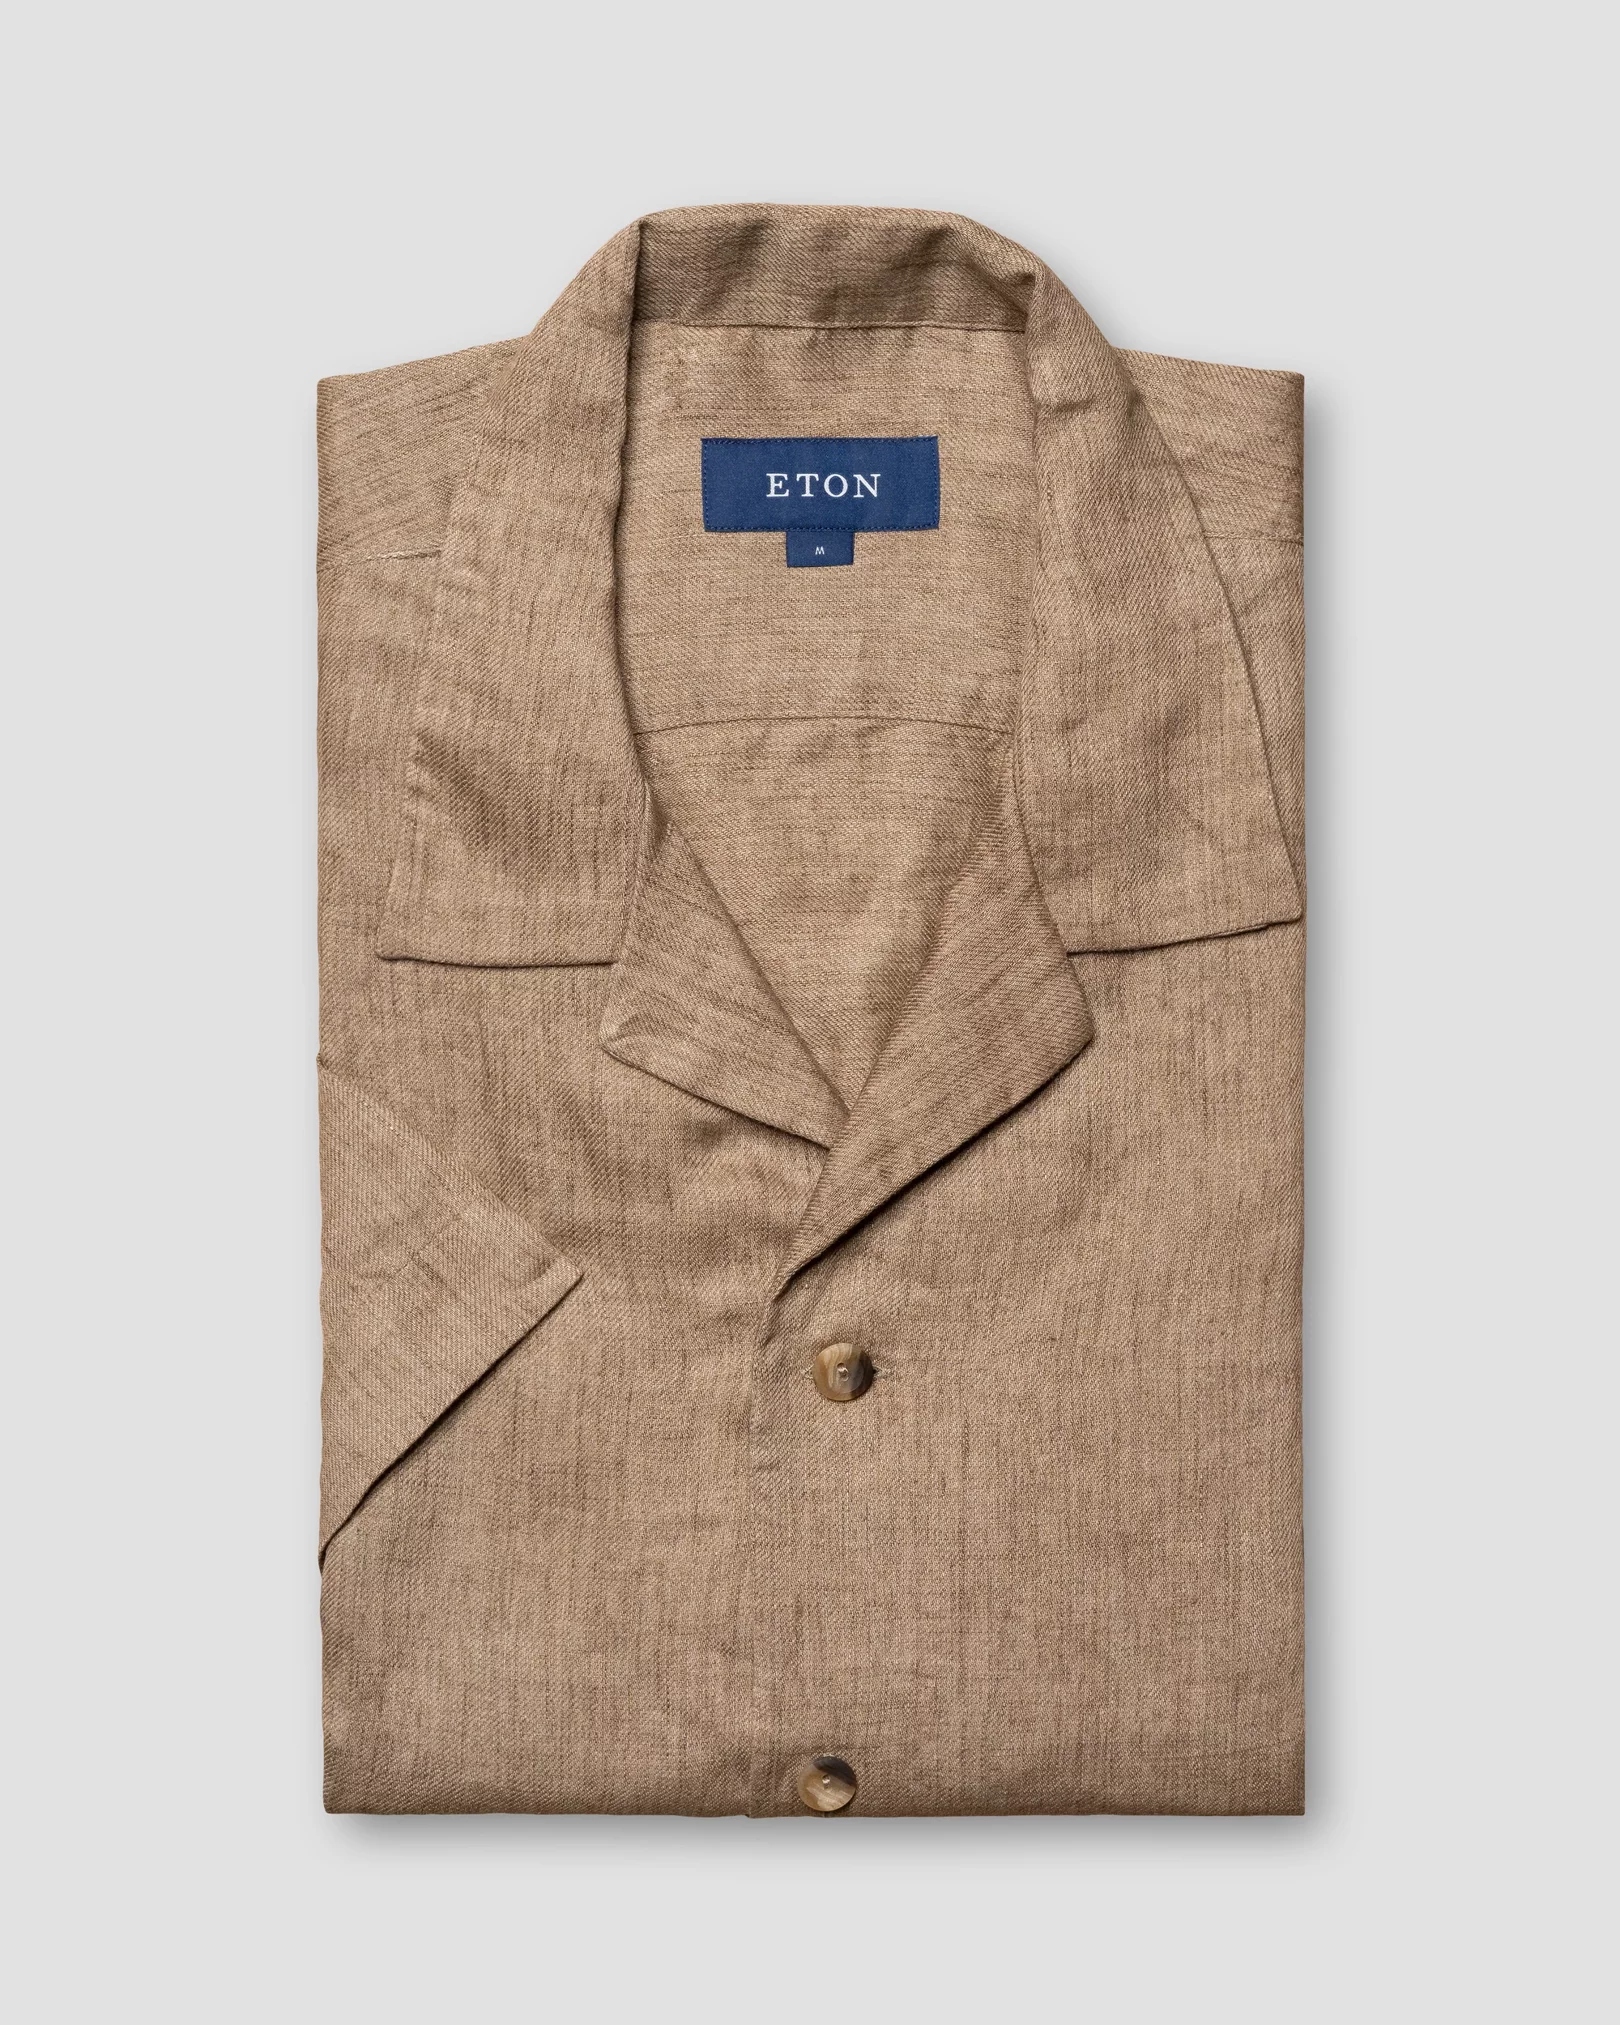 Eton - brown linen resort shirt